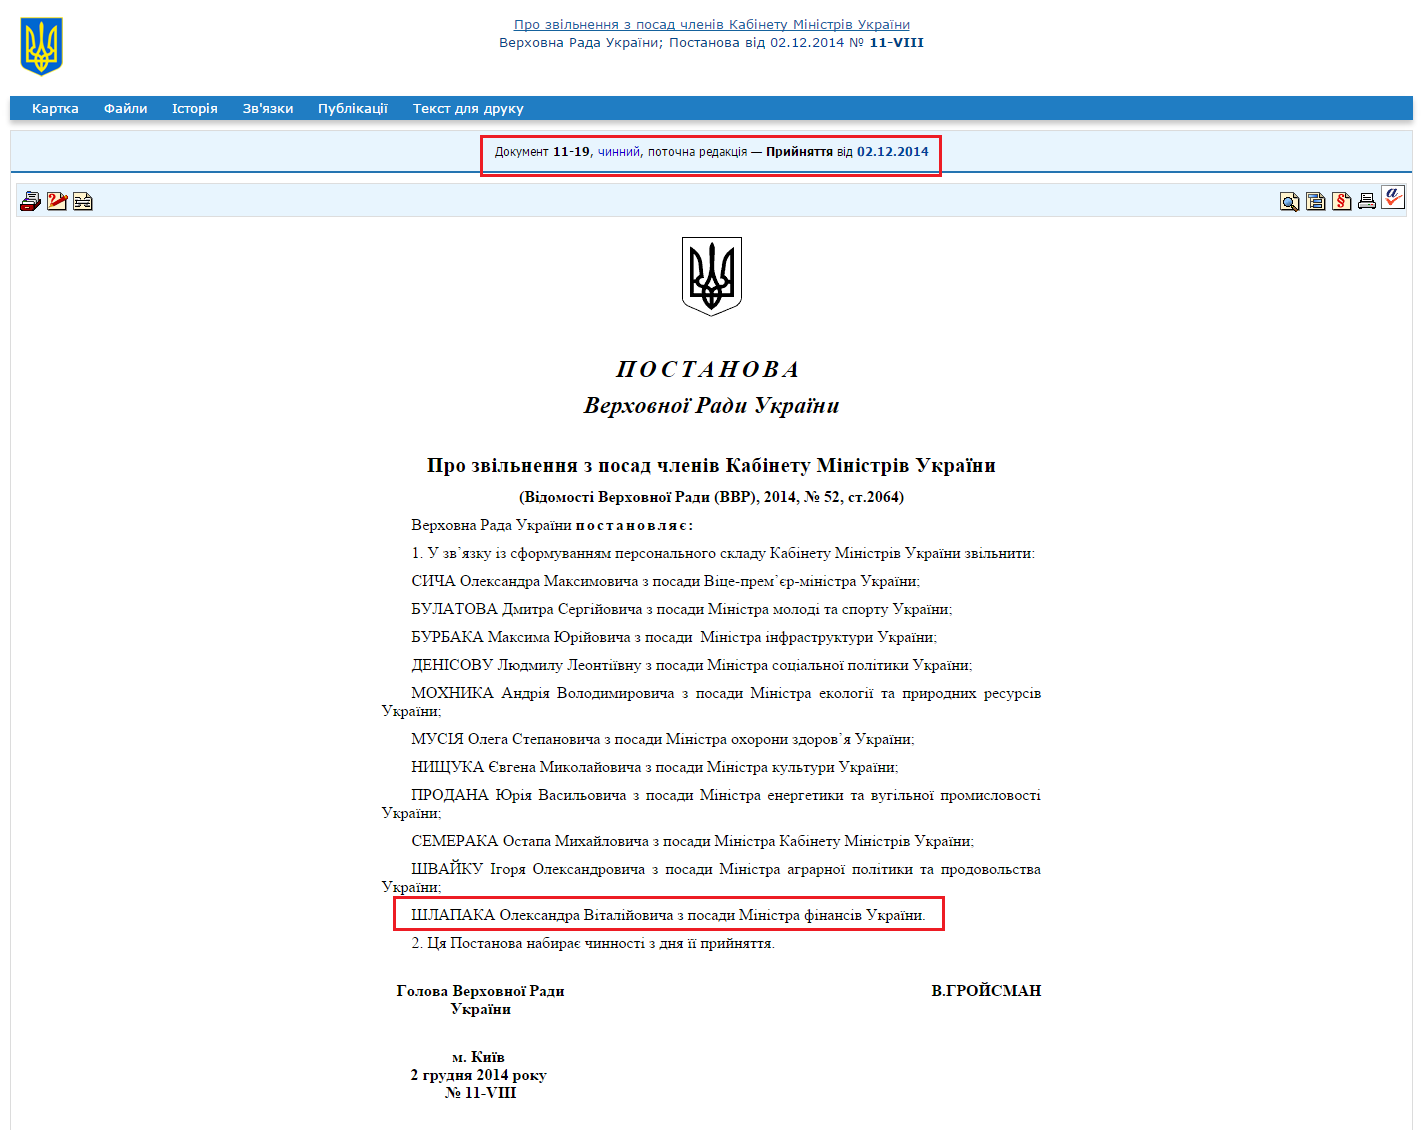 http://zakon1.rada.gov.ua/laws/show/11-19